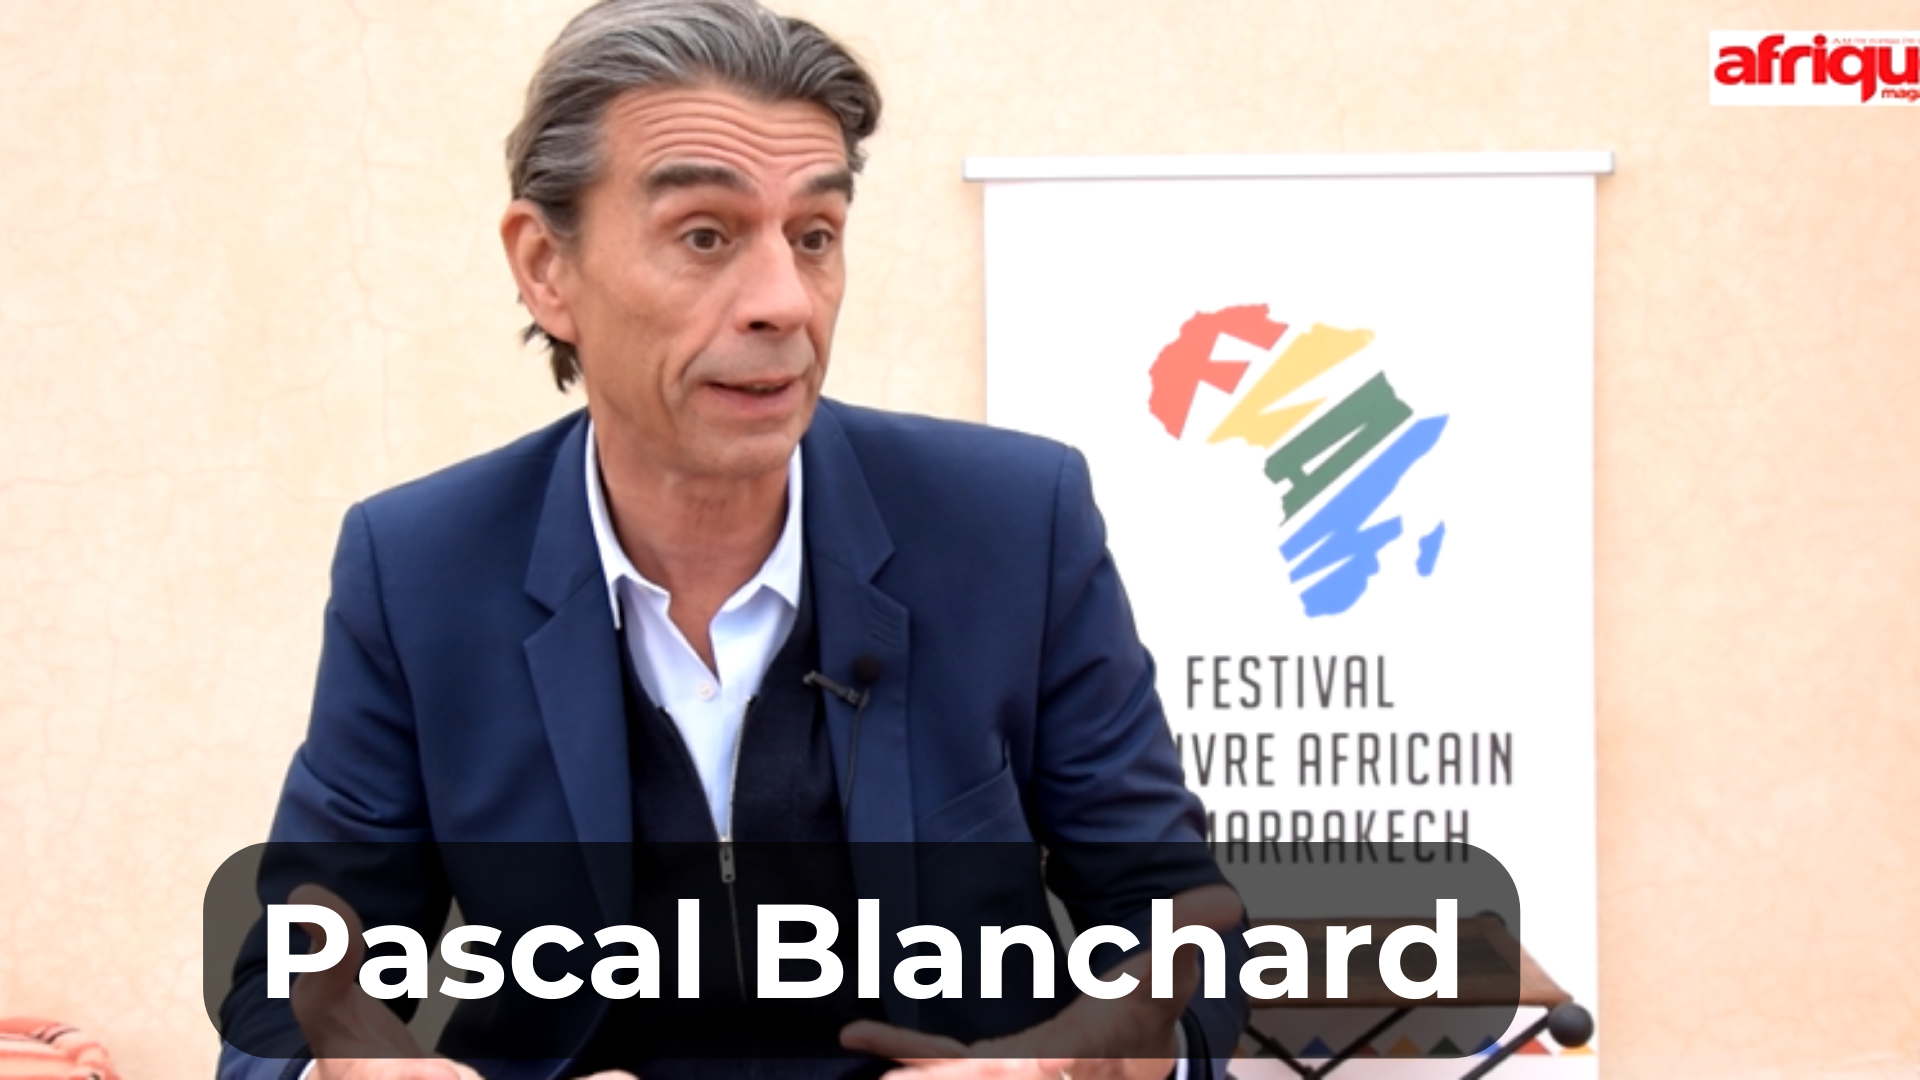 Pascal Blanchard